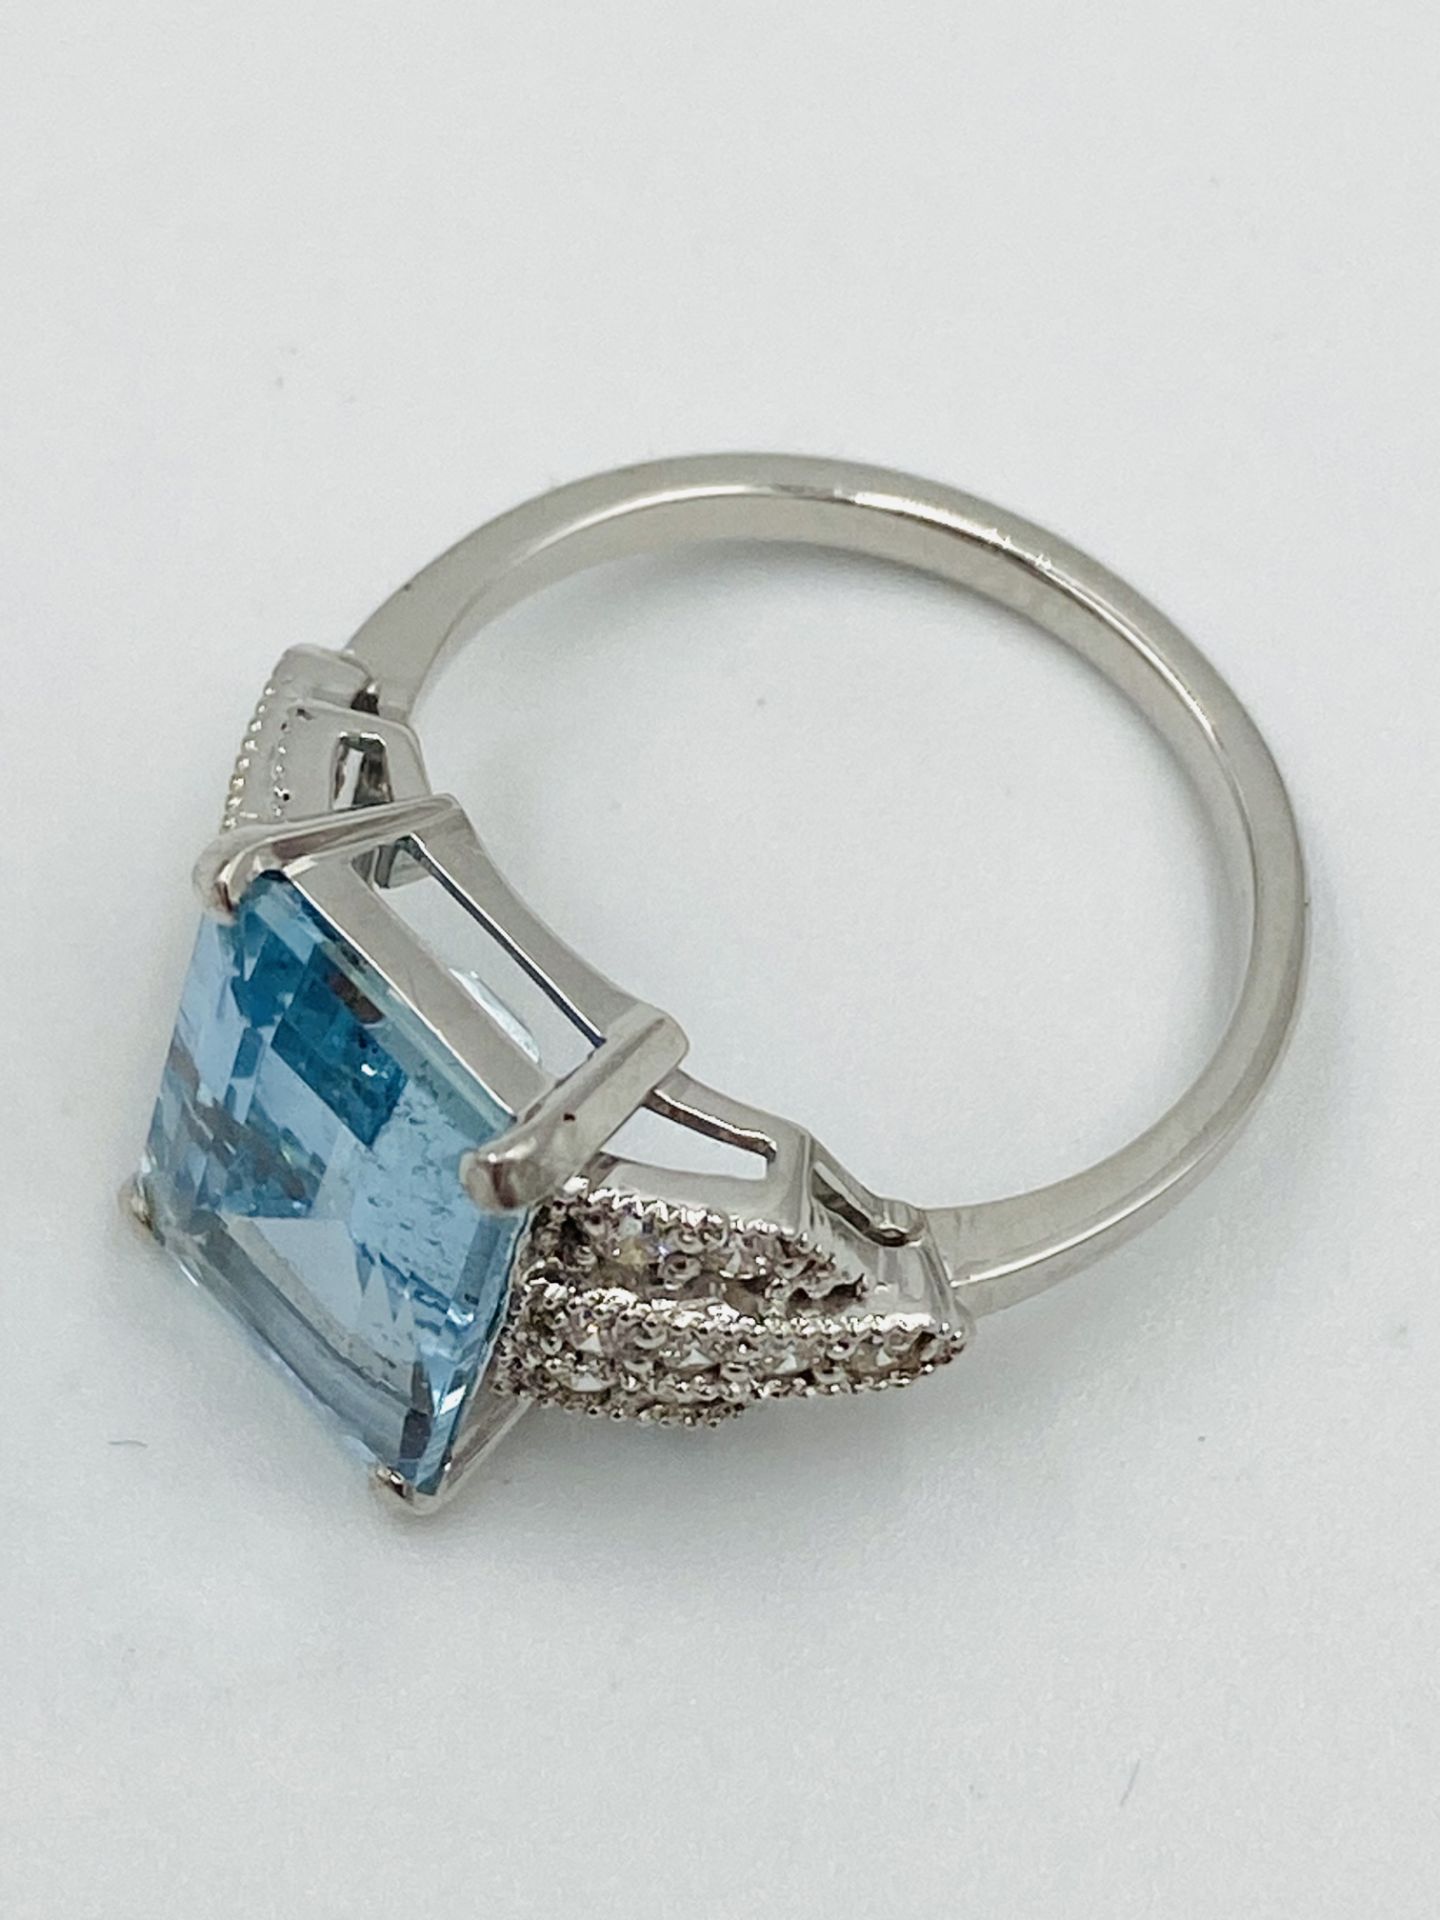 18ct white gold, aquamarine and diamond ring - Image 4 of 6